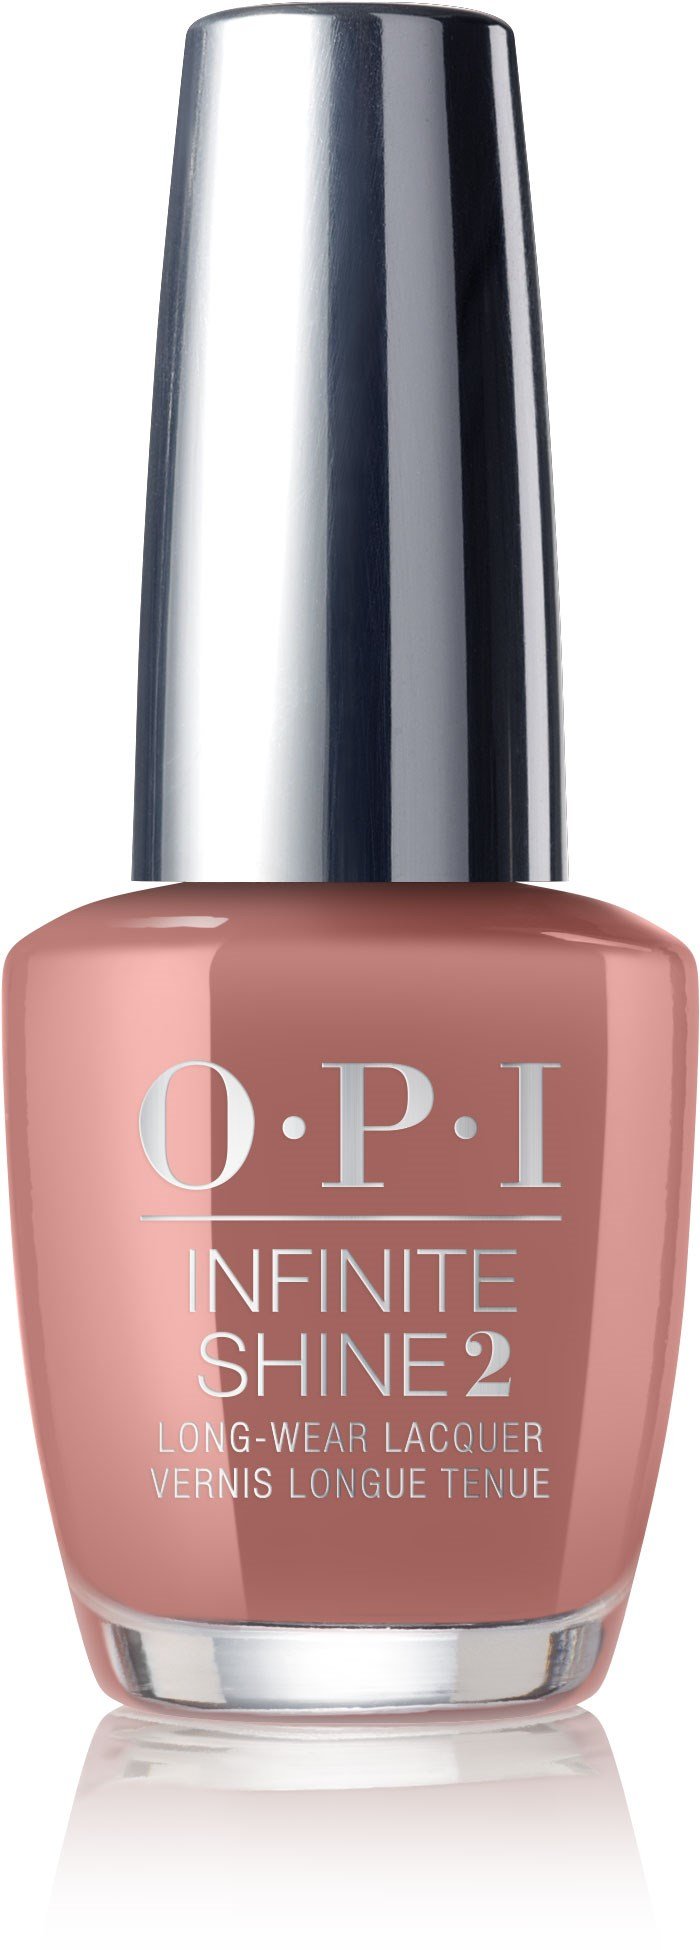 OPI Infinite Shine - Descalzos en Barcelona